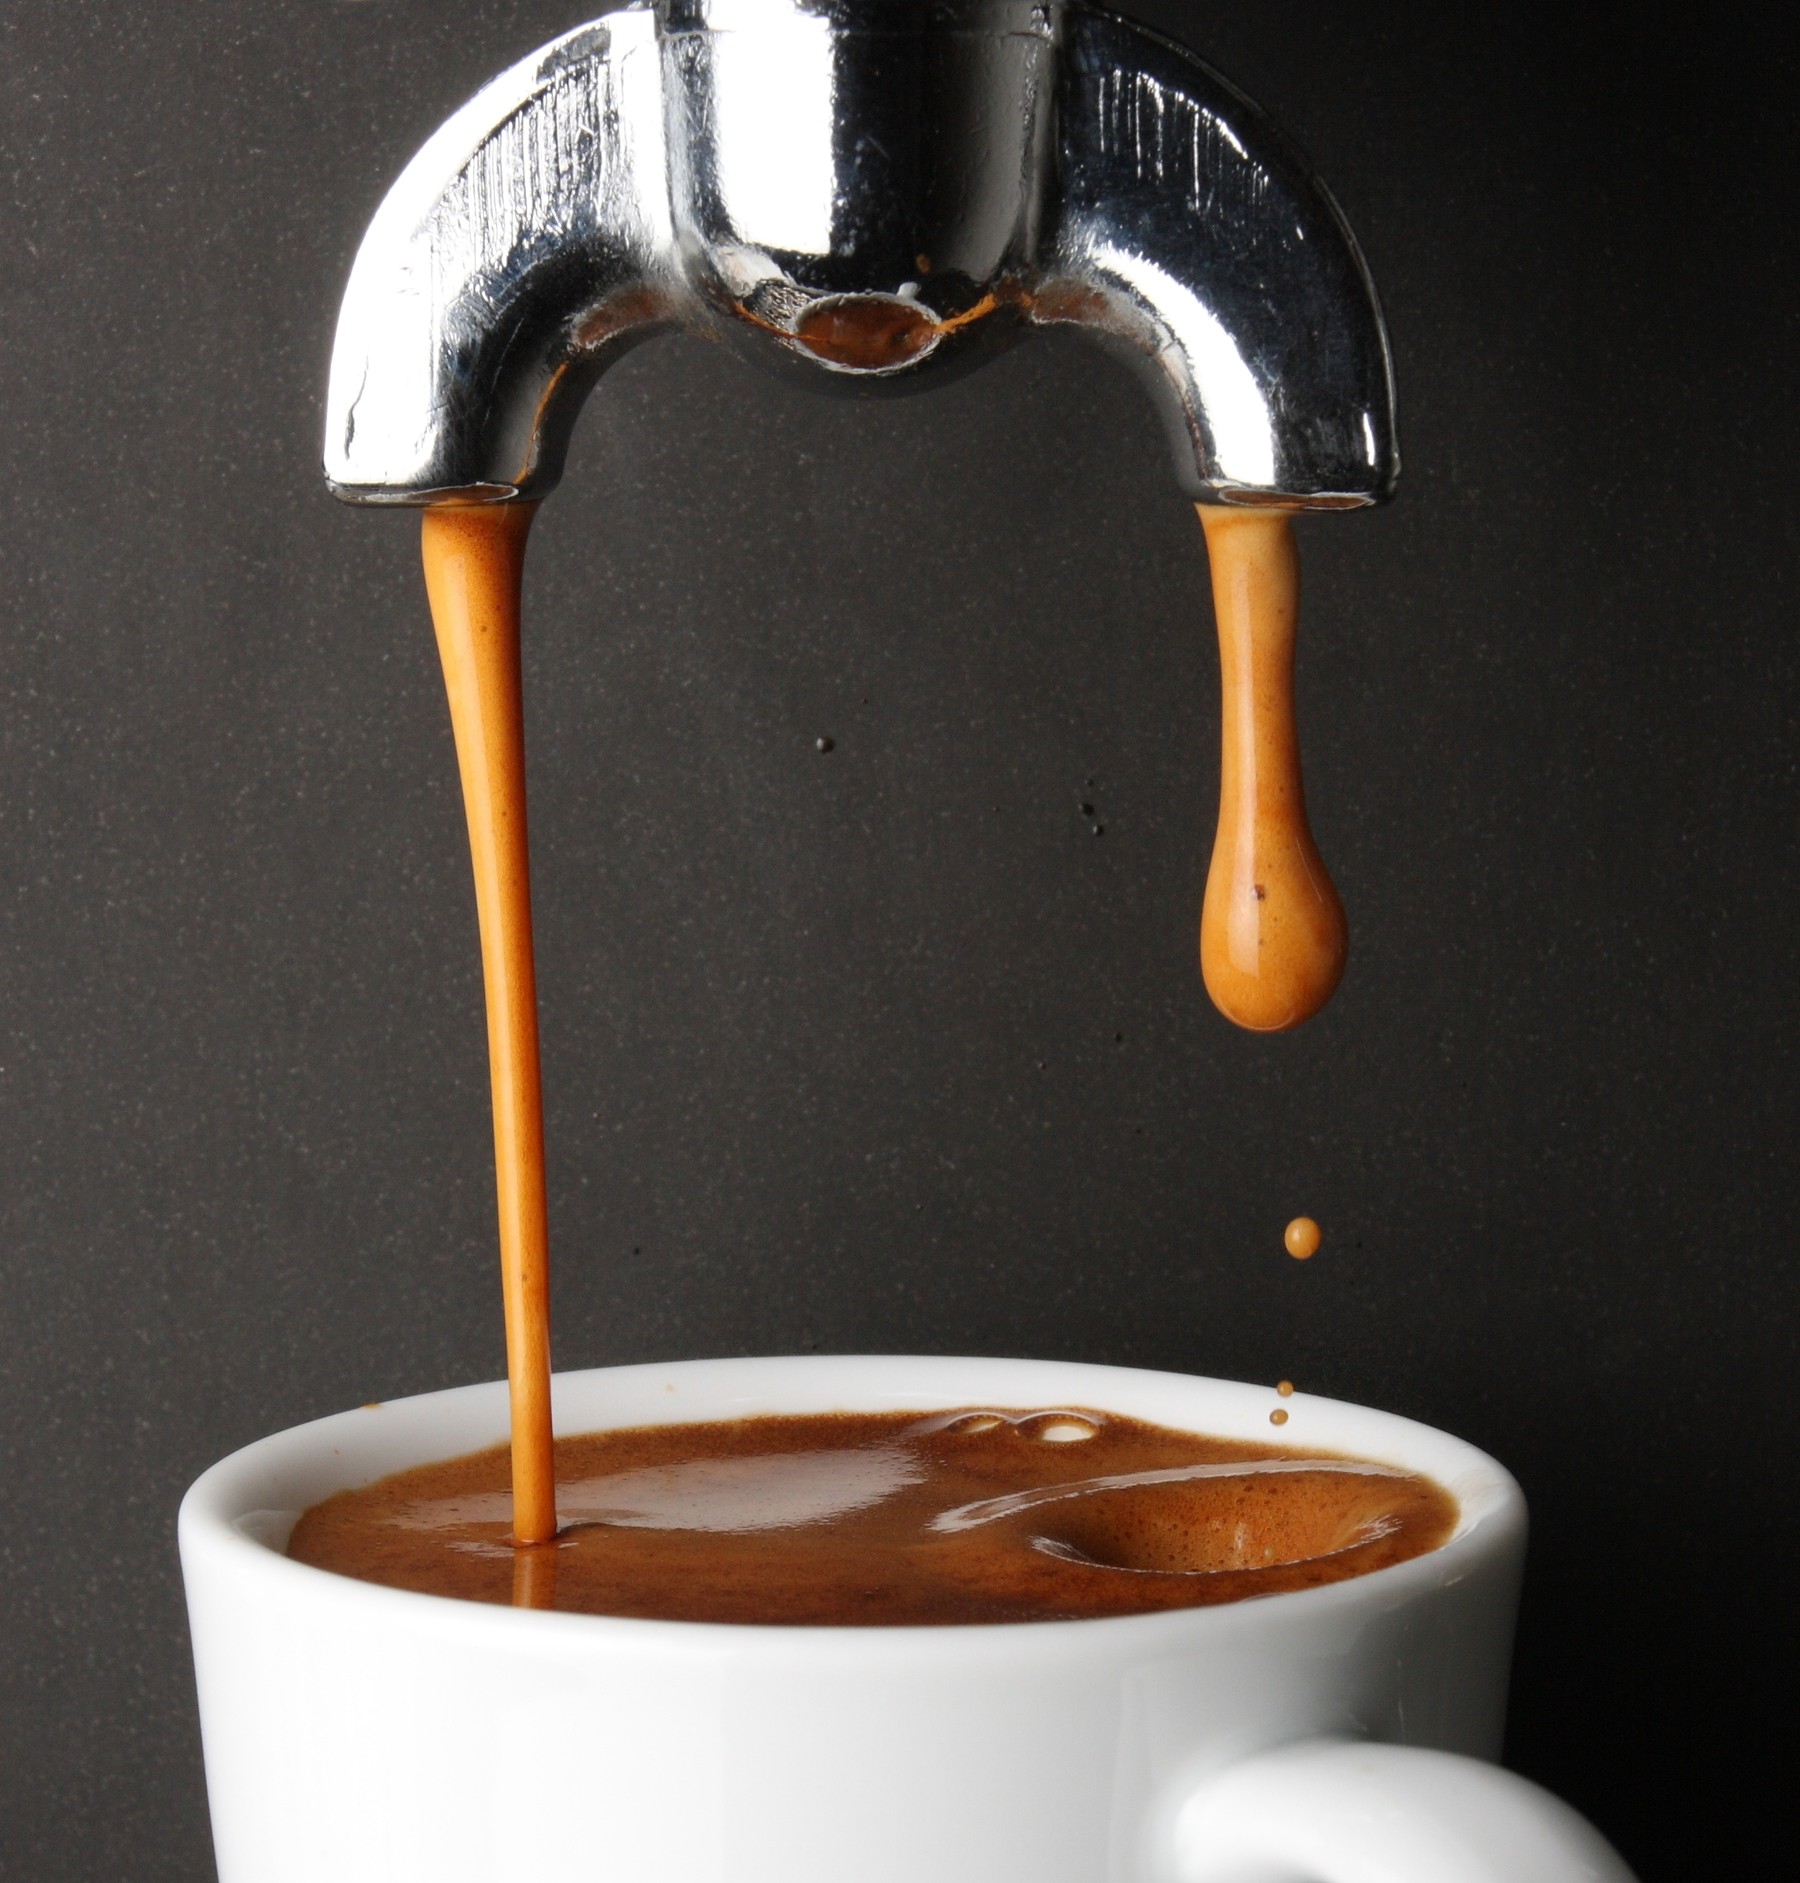 عصاره گیری قهوه  Coffee Extraction *